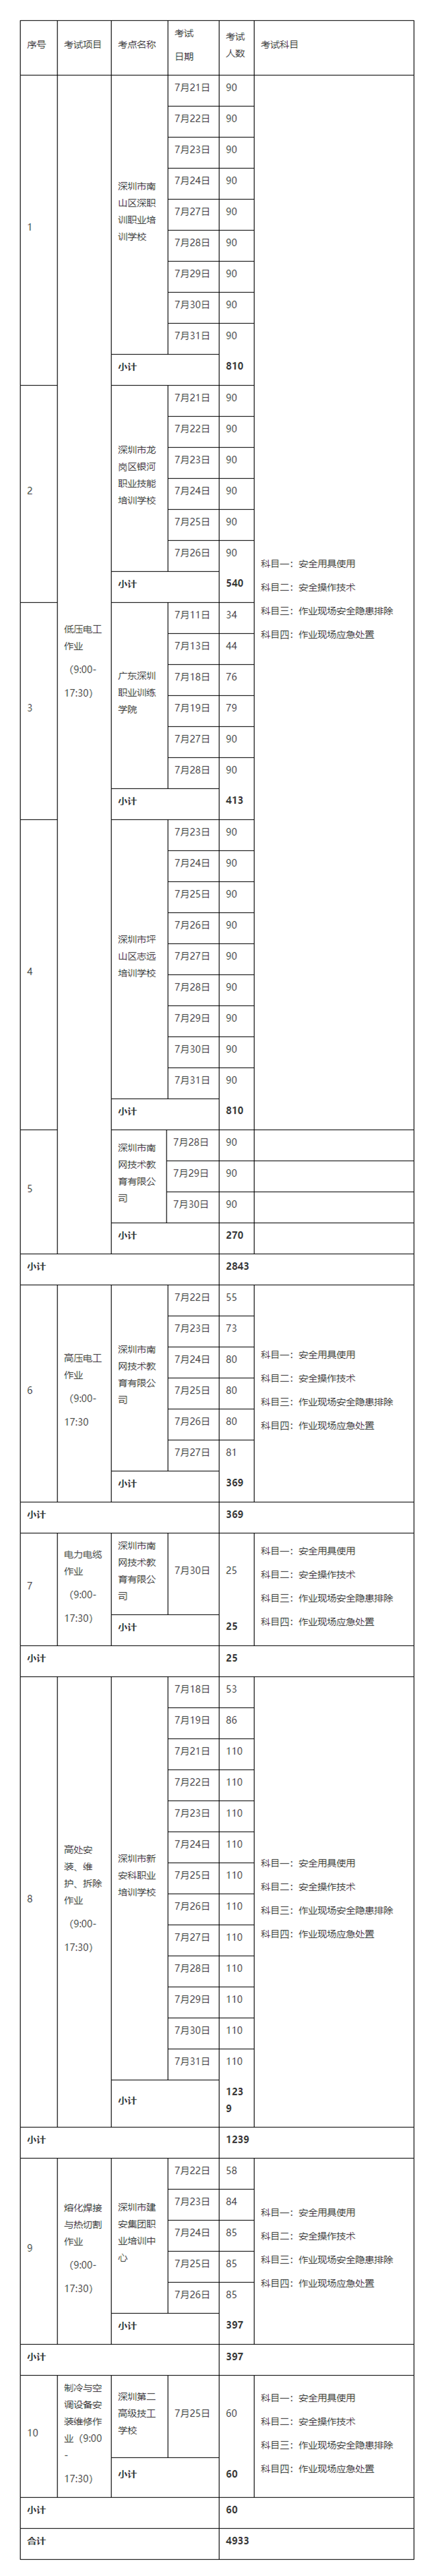 2020年7月特种作业实操考试安排（07月21日_7月31日）-通知公告-深圳市应急管理局_副本.png